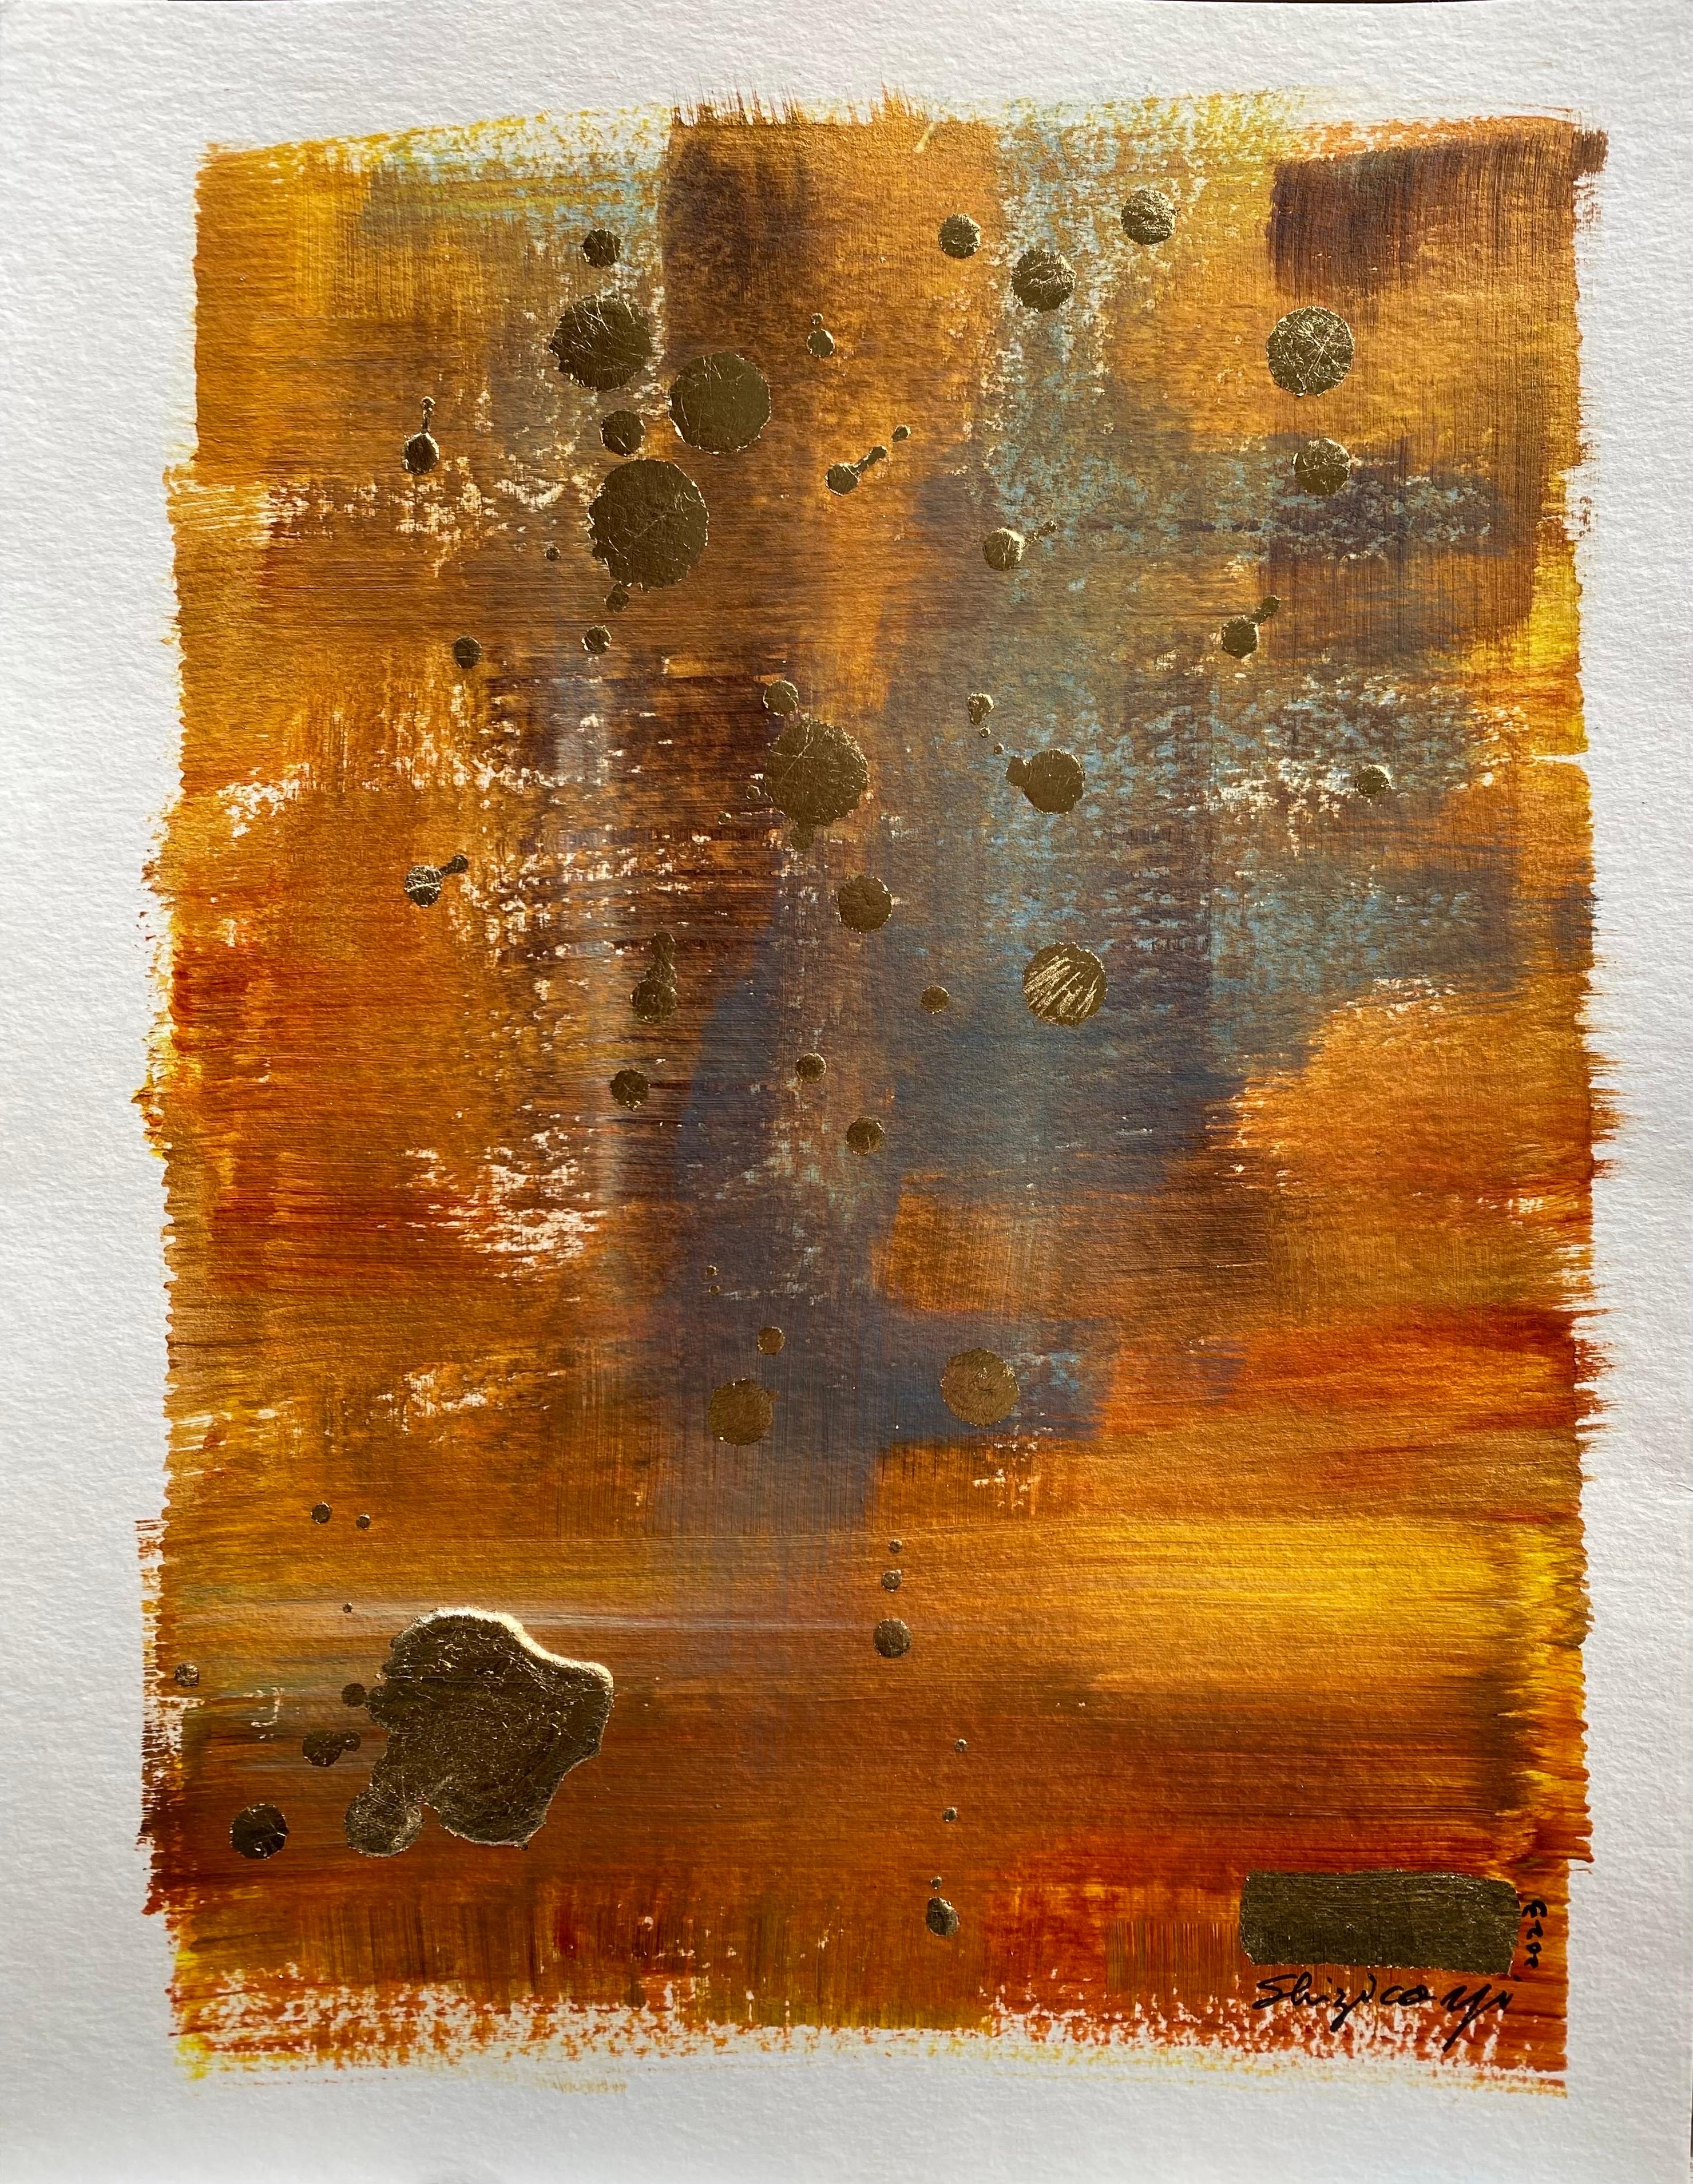 Original Set Offer-Abstract-Gold leaf -UK Awarded Artist, work on papers-Sunlit 4